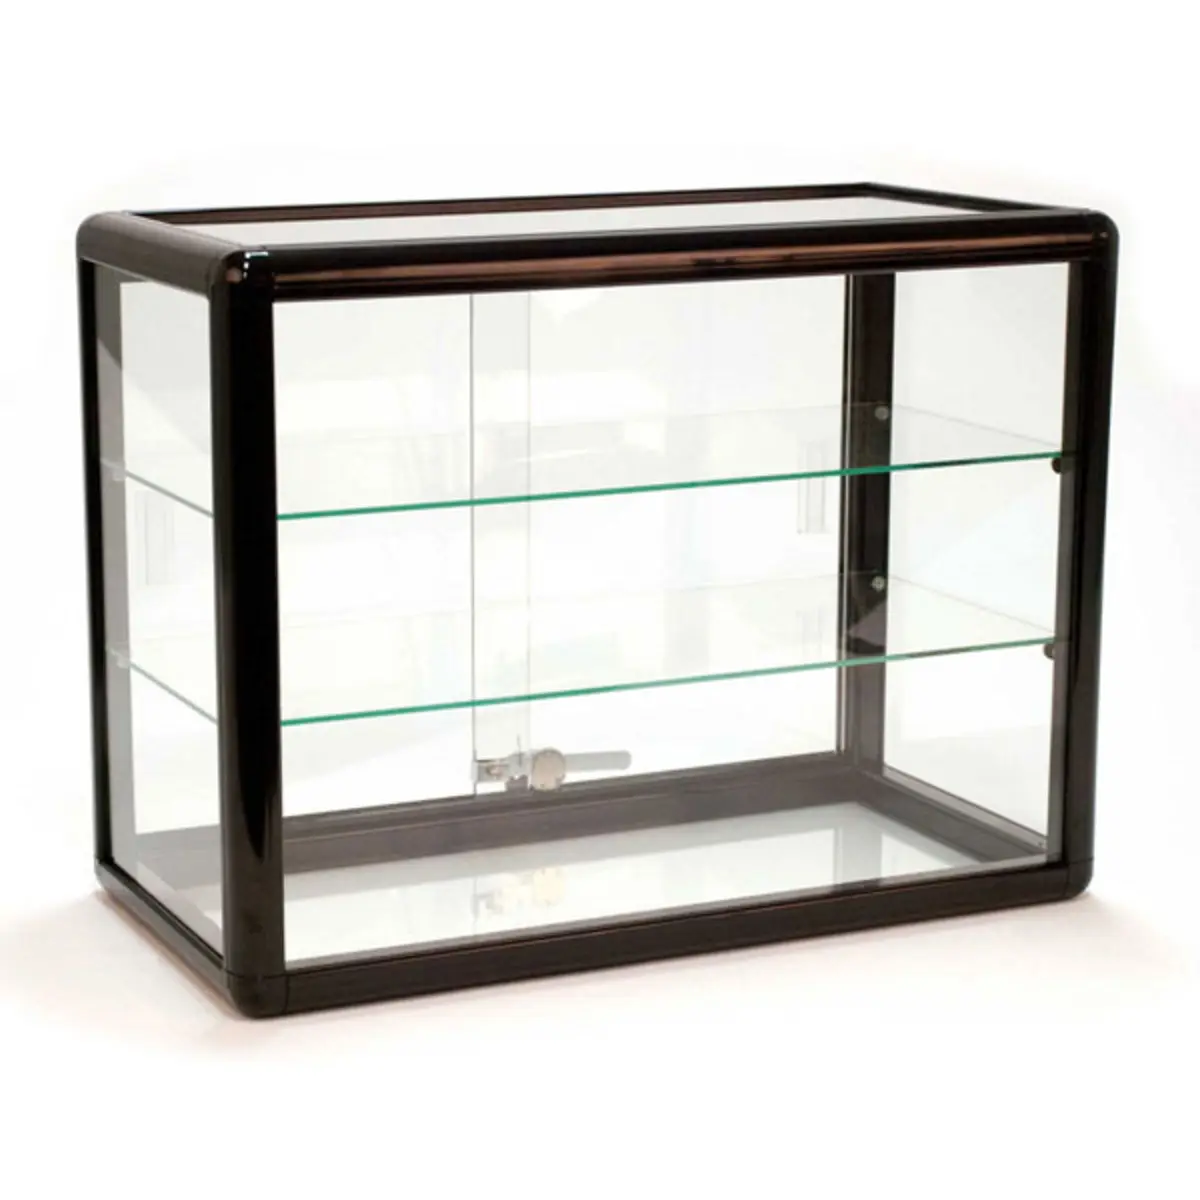 Kunden spezifisches Einzelhandel geschäft 24W X 12D X 18H Aluminium rahmen Glas vitrine